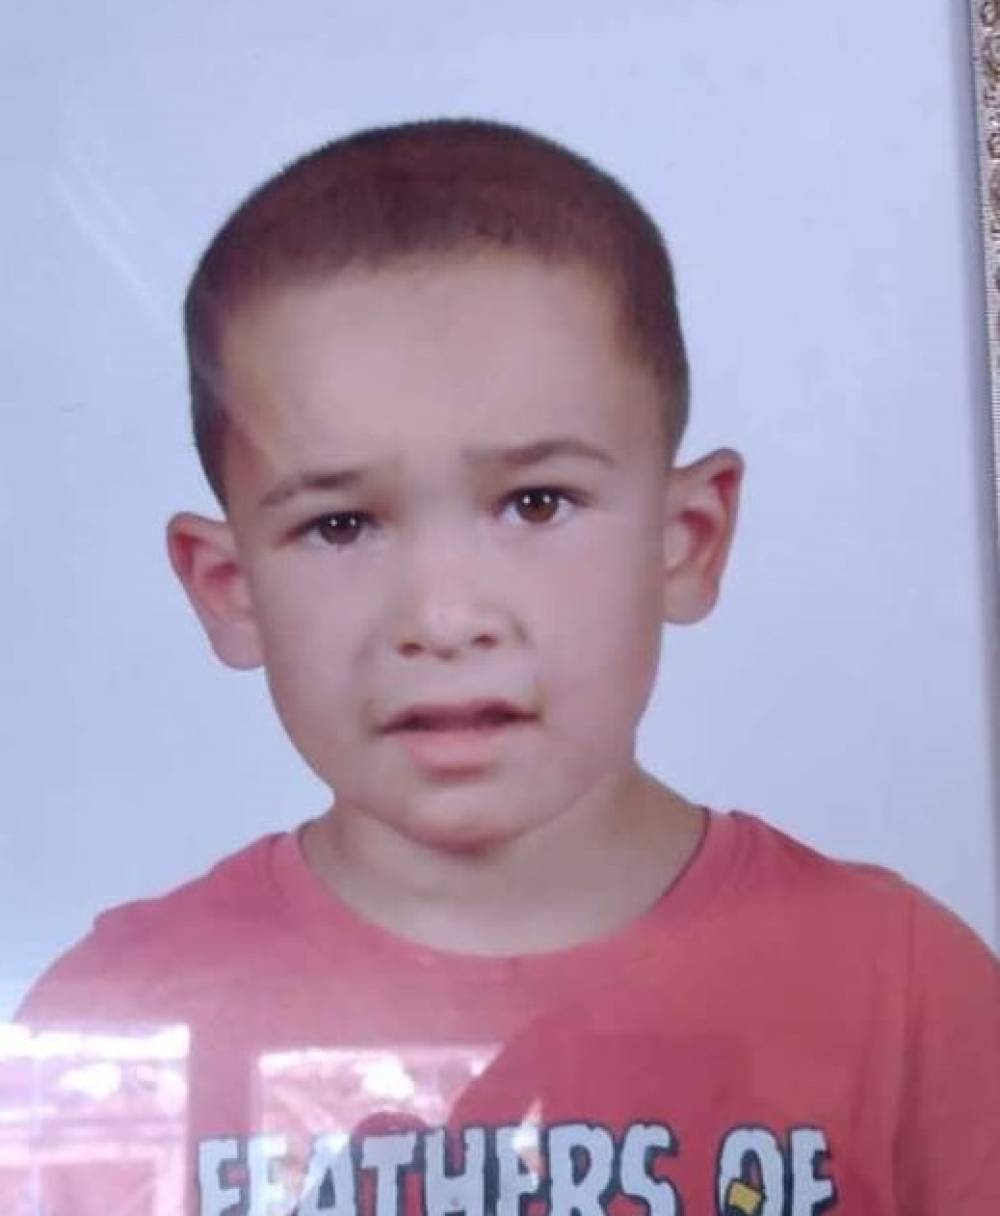 Sulama kanalına düşen 6 yaşındaki çocuk hayatını kaybetti